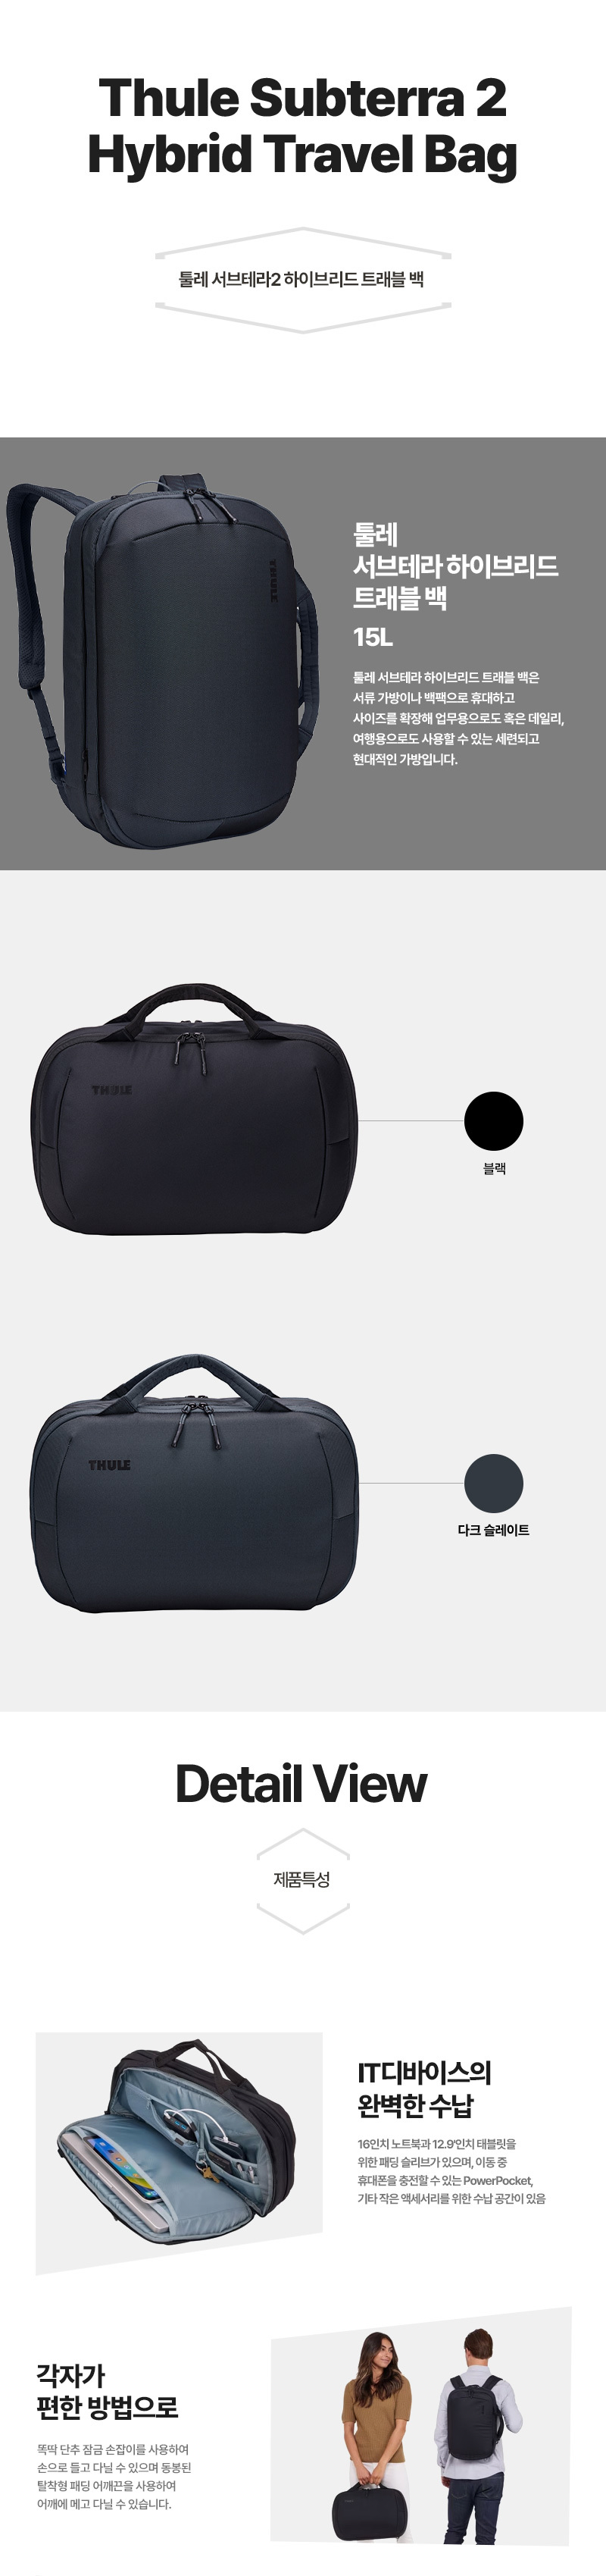 hyb-travel-bag-01.jpg